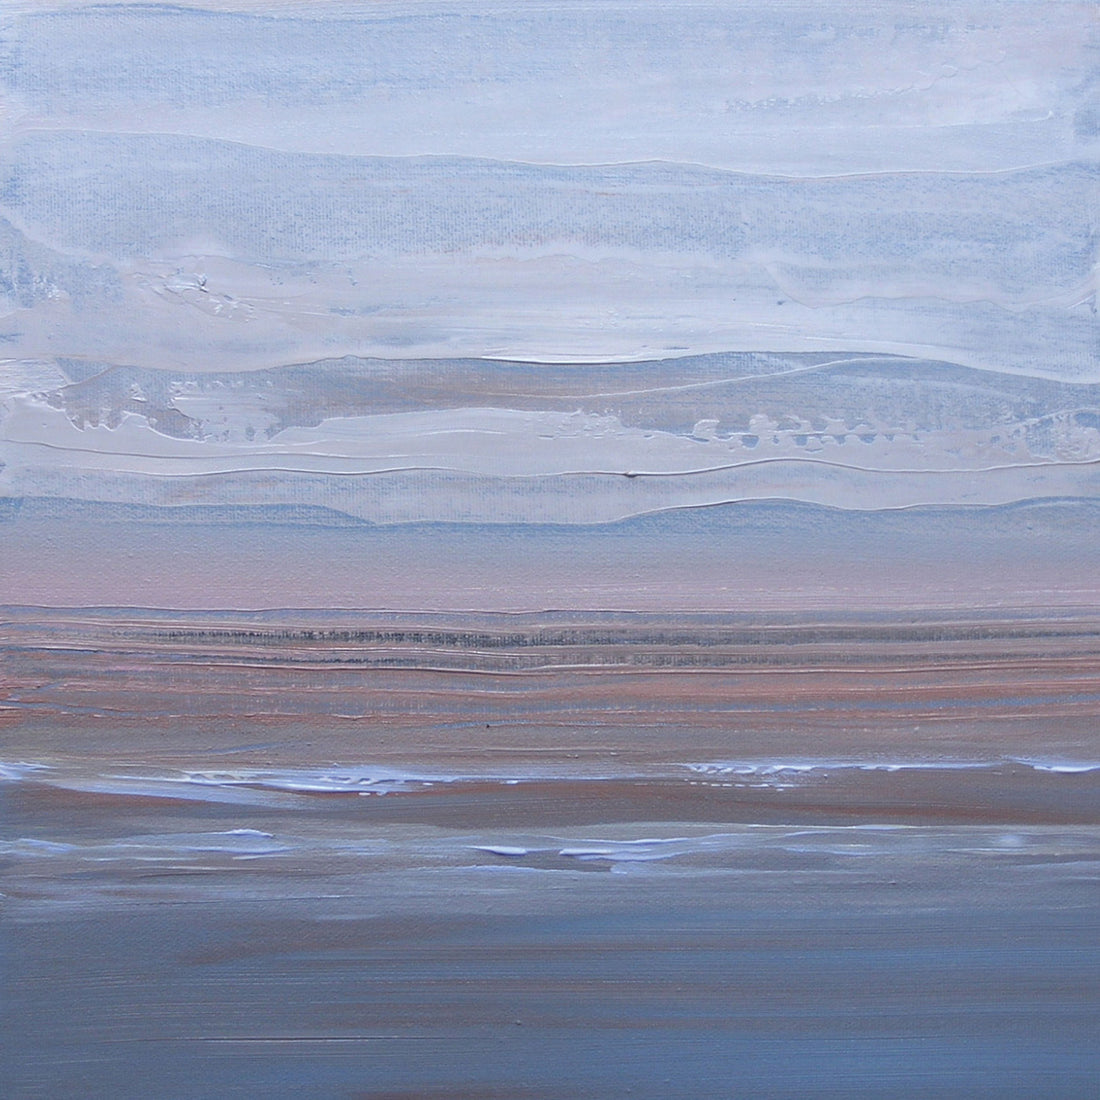 Loretta Kaltenhauser "Misty Mountain" abstract landscape painting Canadian artsit